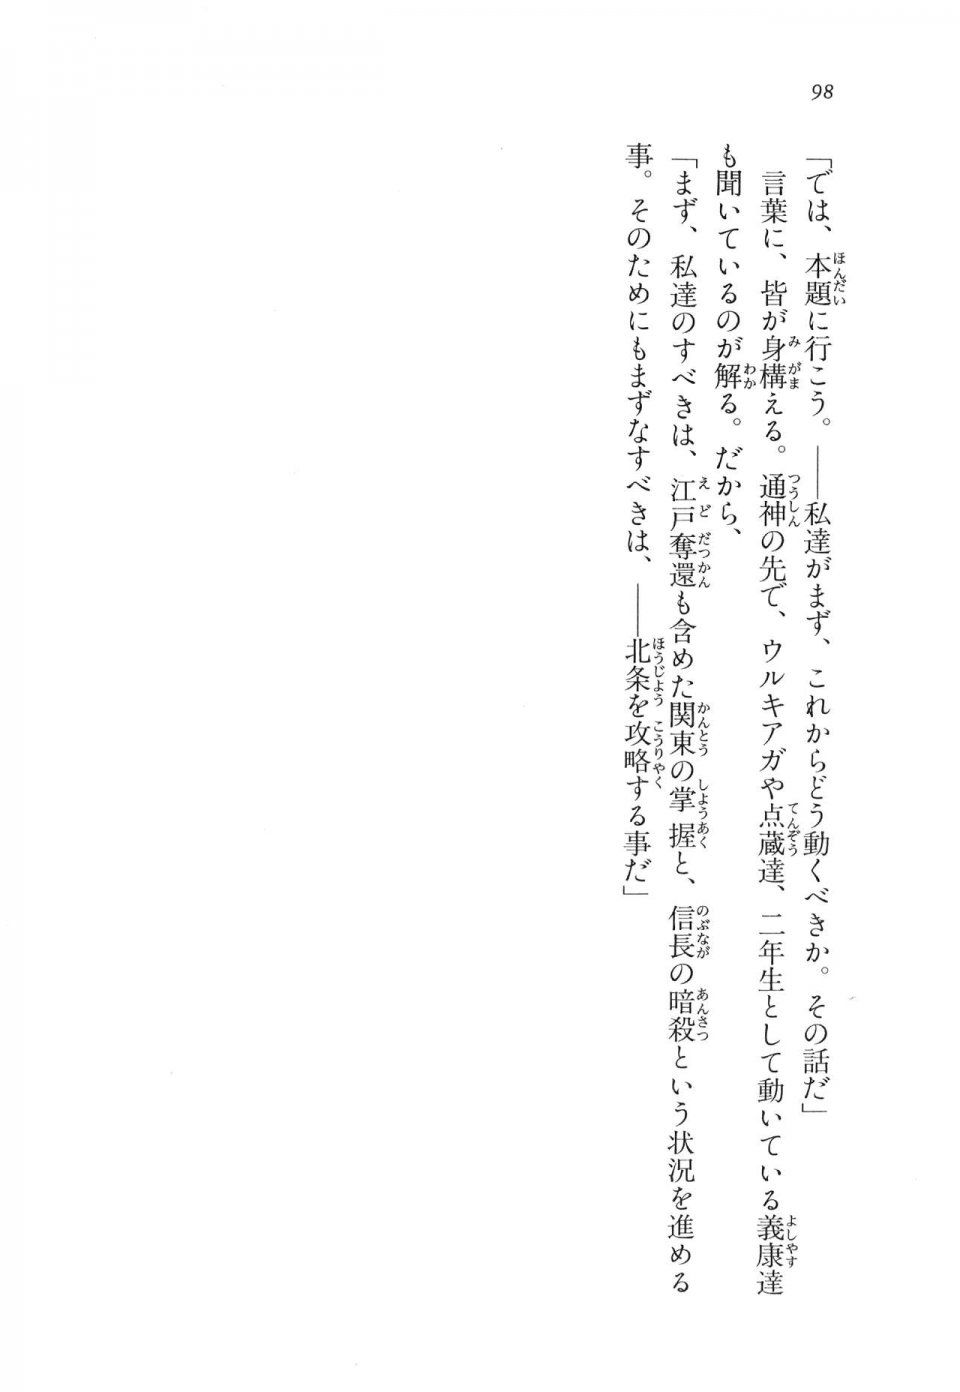 Kyoukai Senjou no Horizon LN Vol 11(5A) - Photo #98